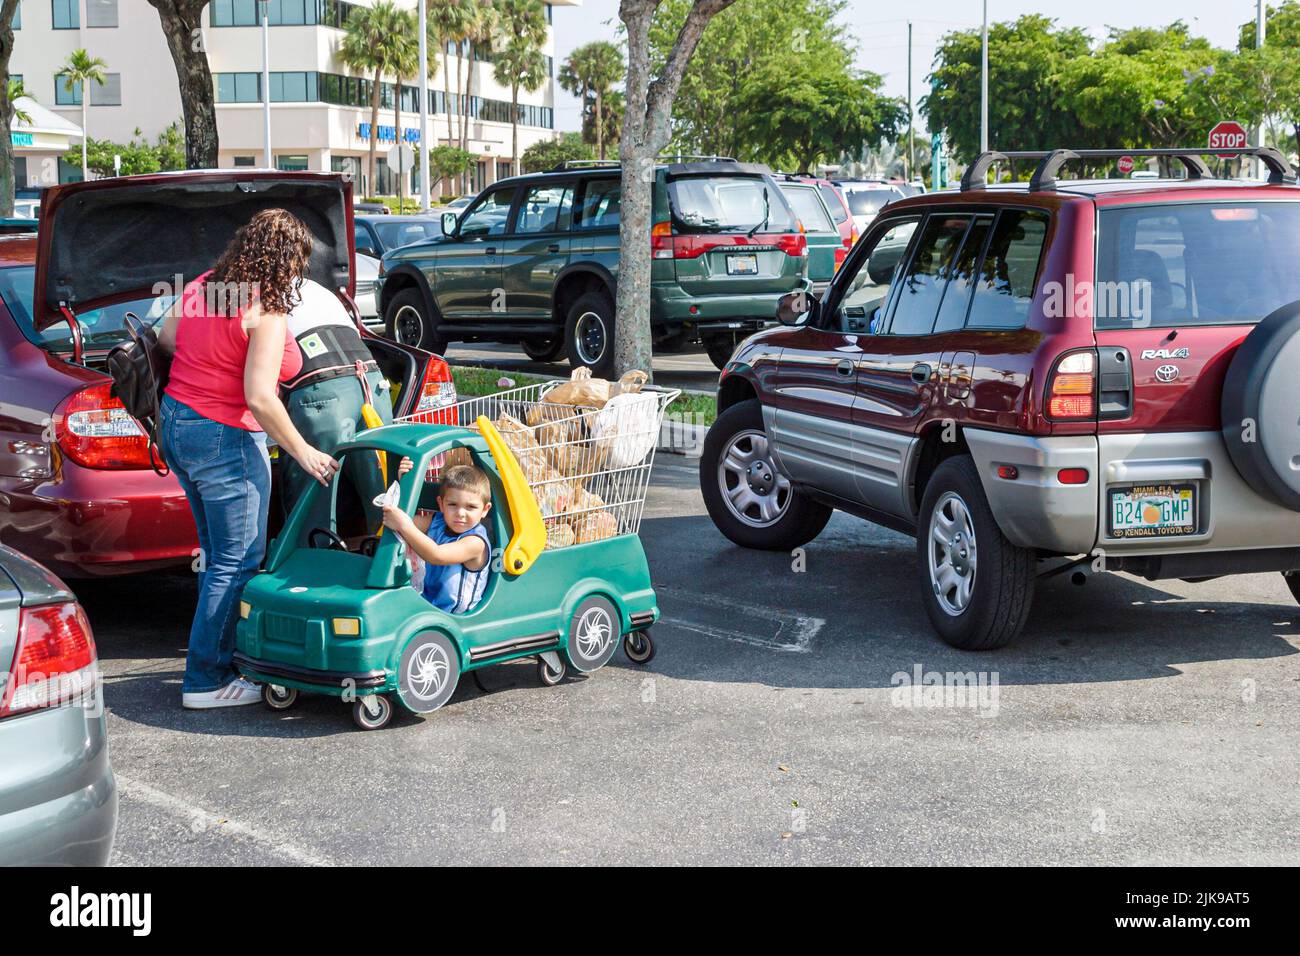 Miami Florida, shopper center centro comercial estacionamiento estacionamiento estacionamiento estacionamiento, mujer hispana madre agarrando niño hijo carro como el vehículo de las copias de seguridad prevención de accidentes Foto de stock